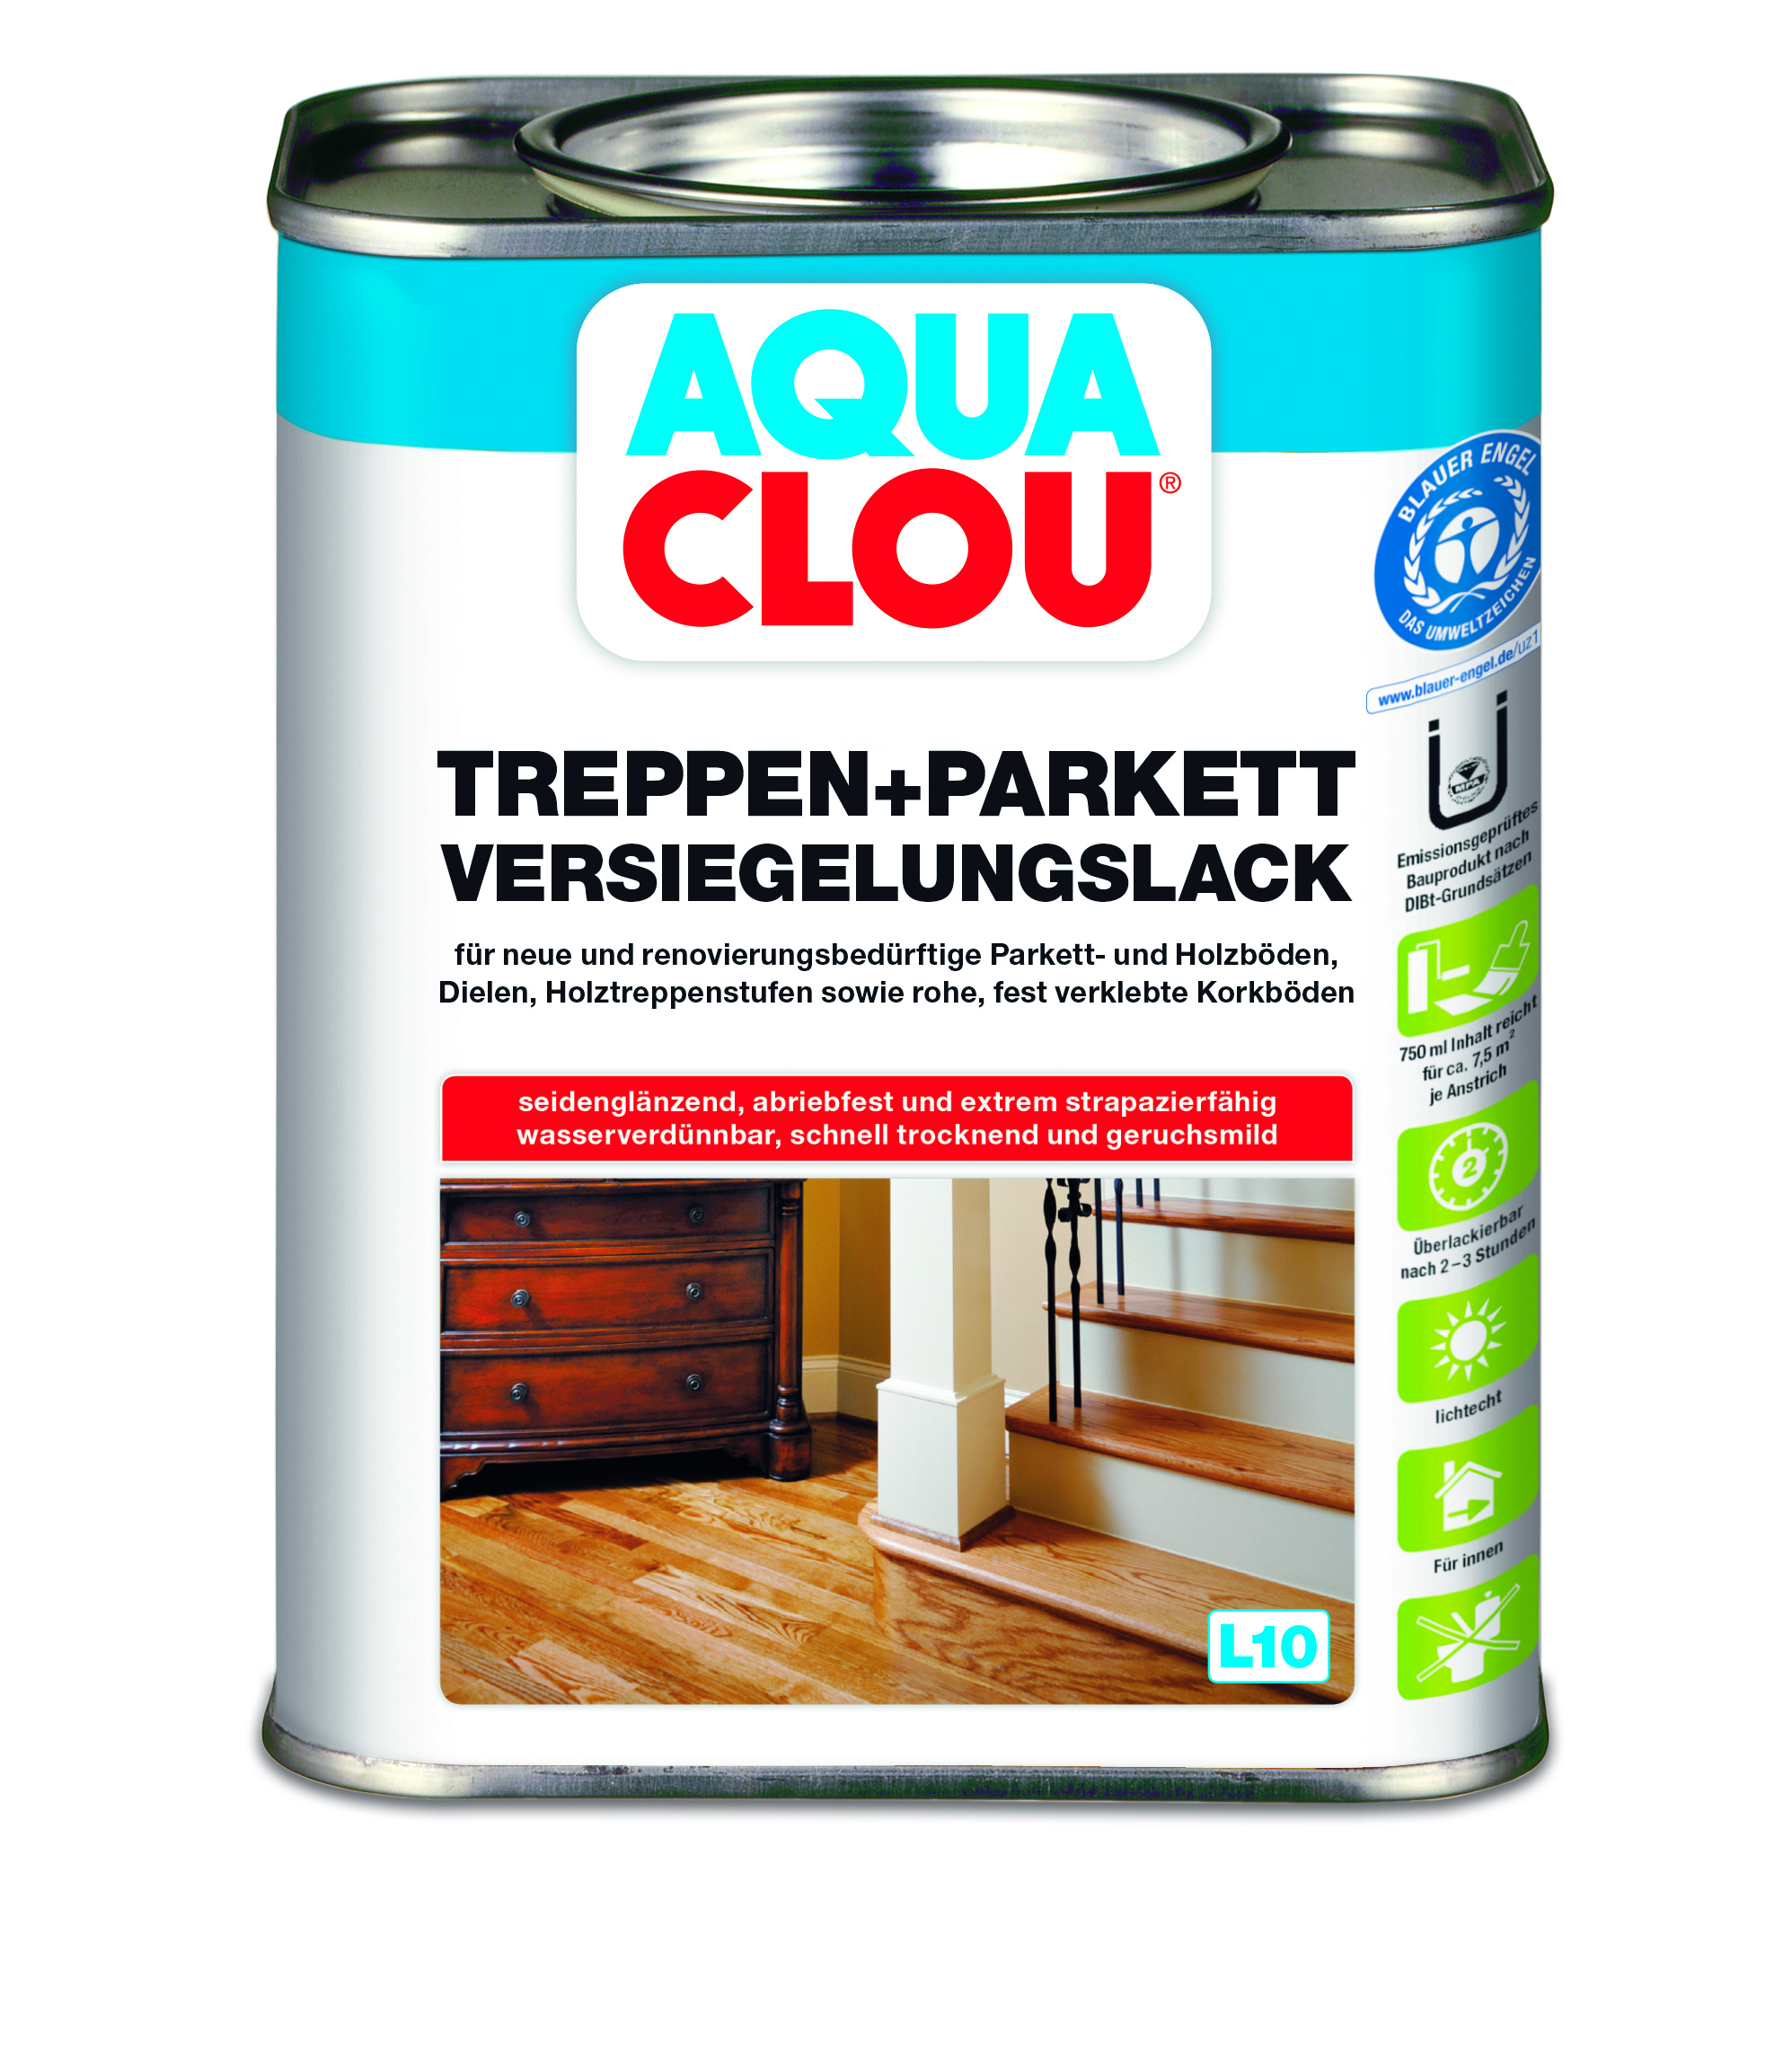 AQUA CLOU Treppen + Parkett Versiegelungslack L10, 750 ml